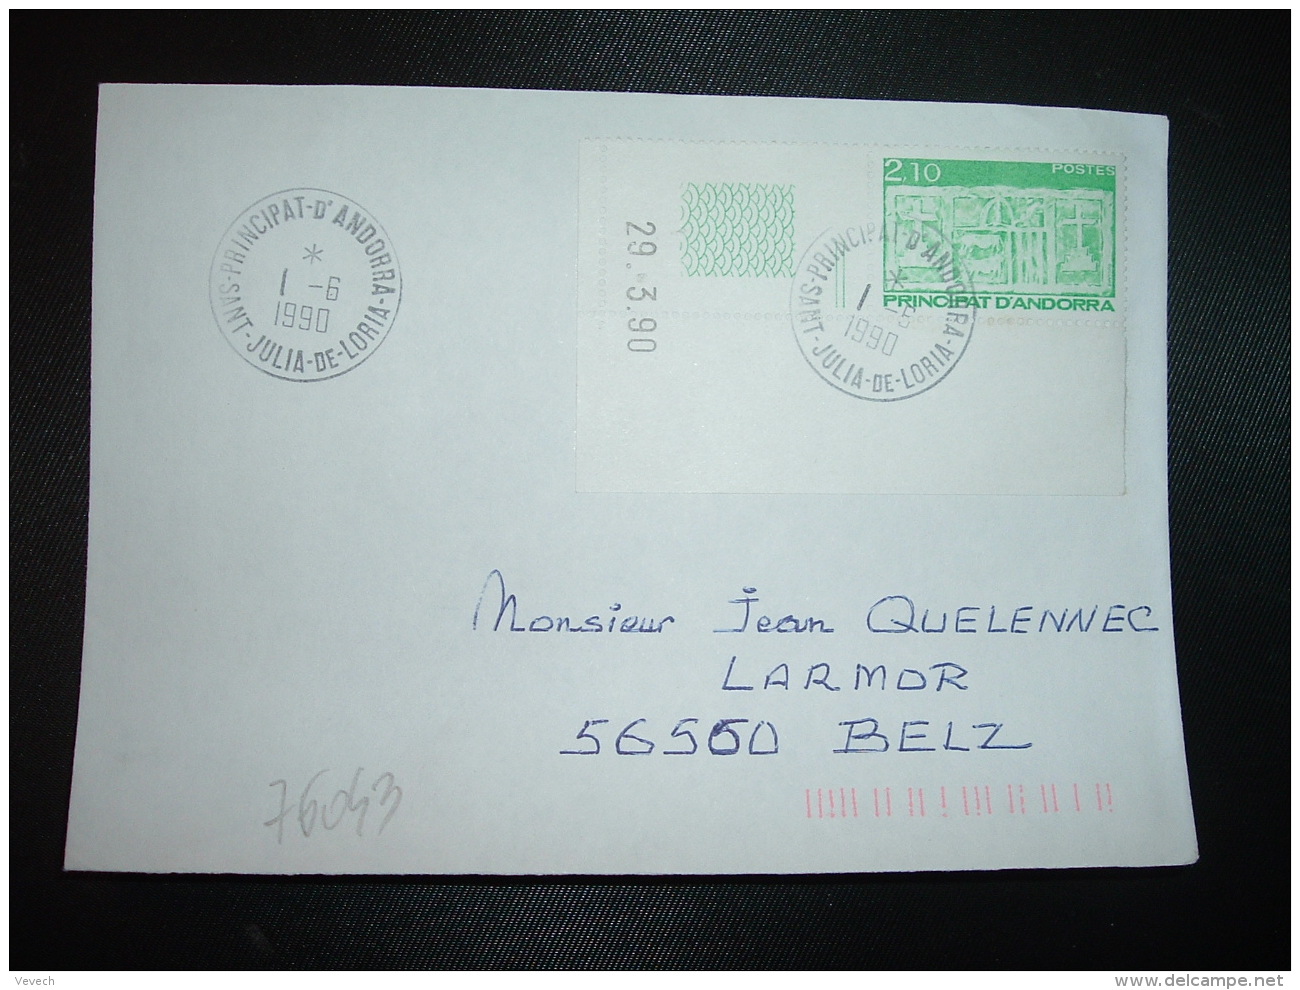 LETTRE TP 2,10 COIN DATE 29.3.90 OBL.1-6 1990 SAINT JULIA DE LORIA - Covers & Documents